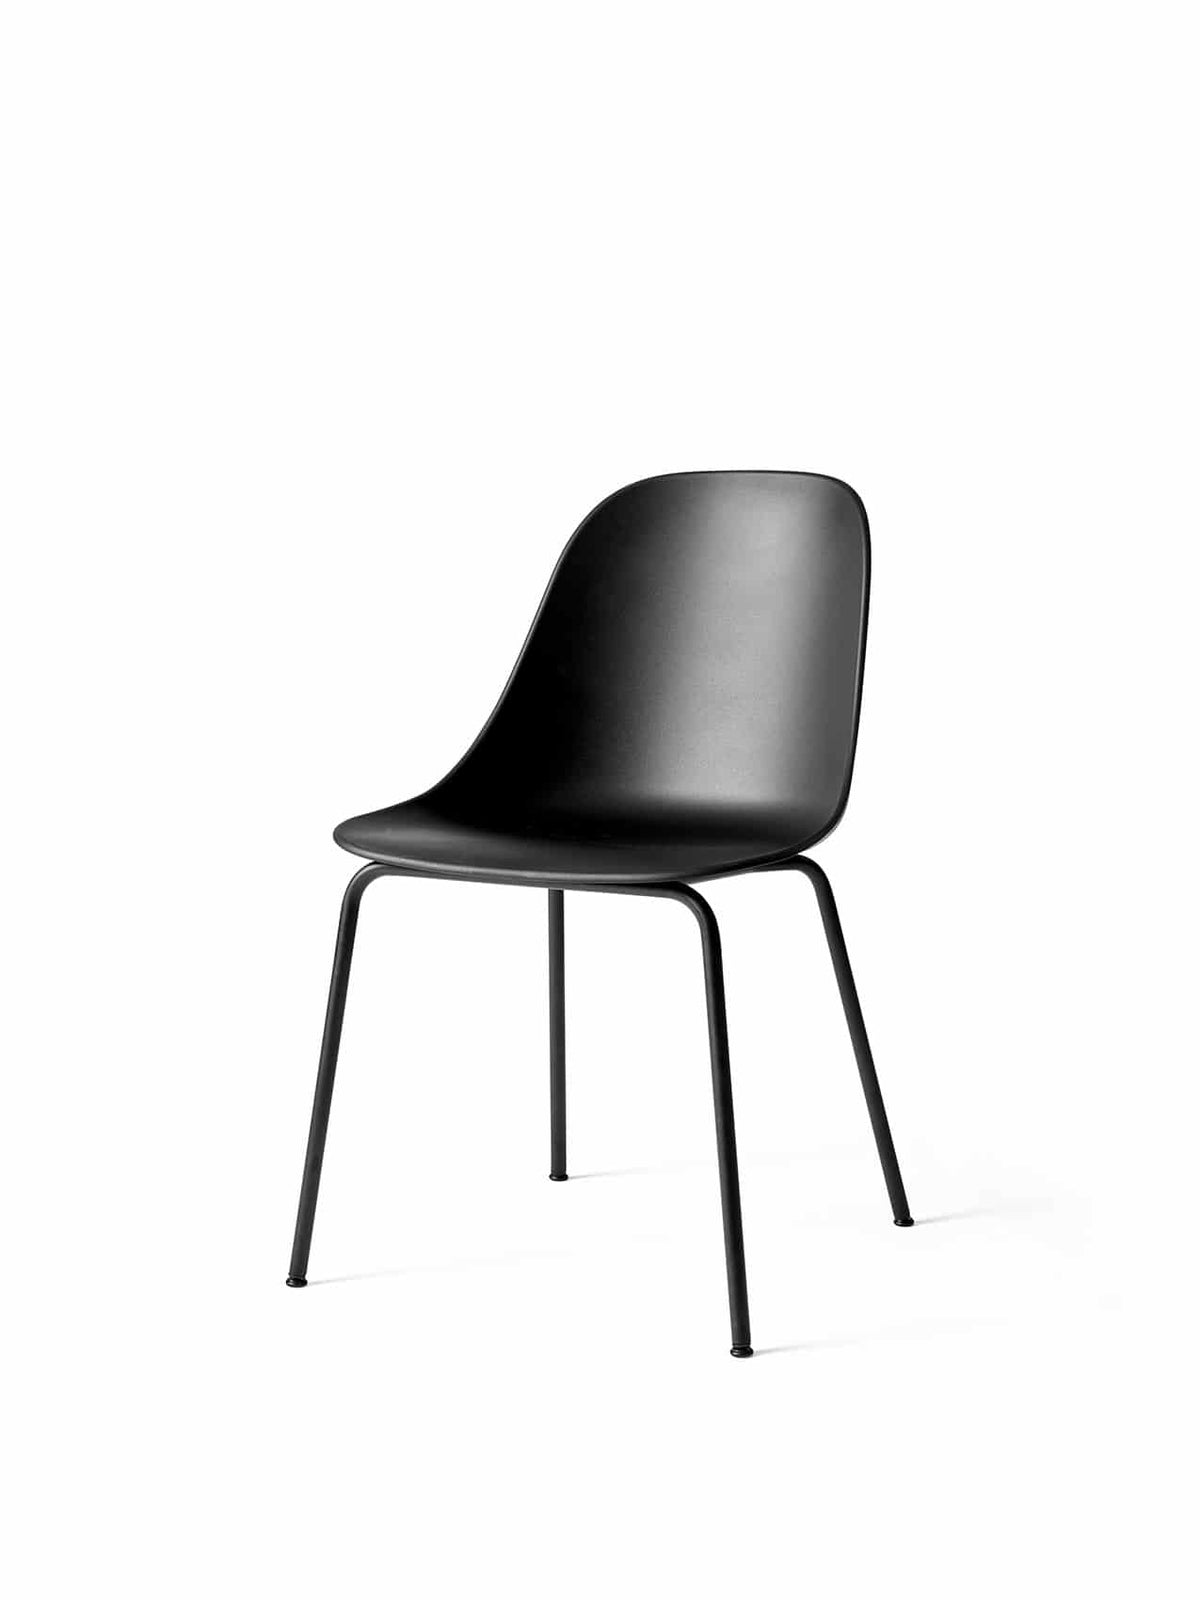 Harbour Side Chair - Steel Base by Audo Copenhagen